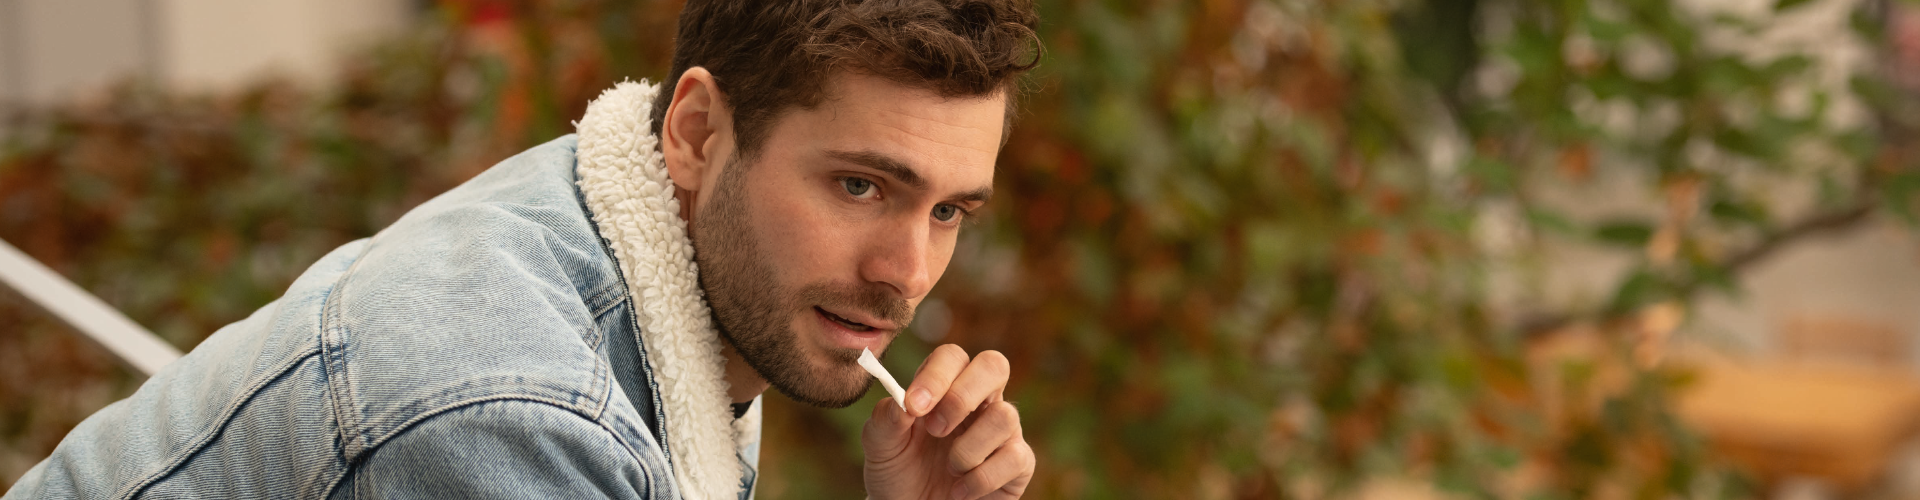 Ein Mann nimmt ein Nikotinbeutelchen, während er auf einer Bank sitzt